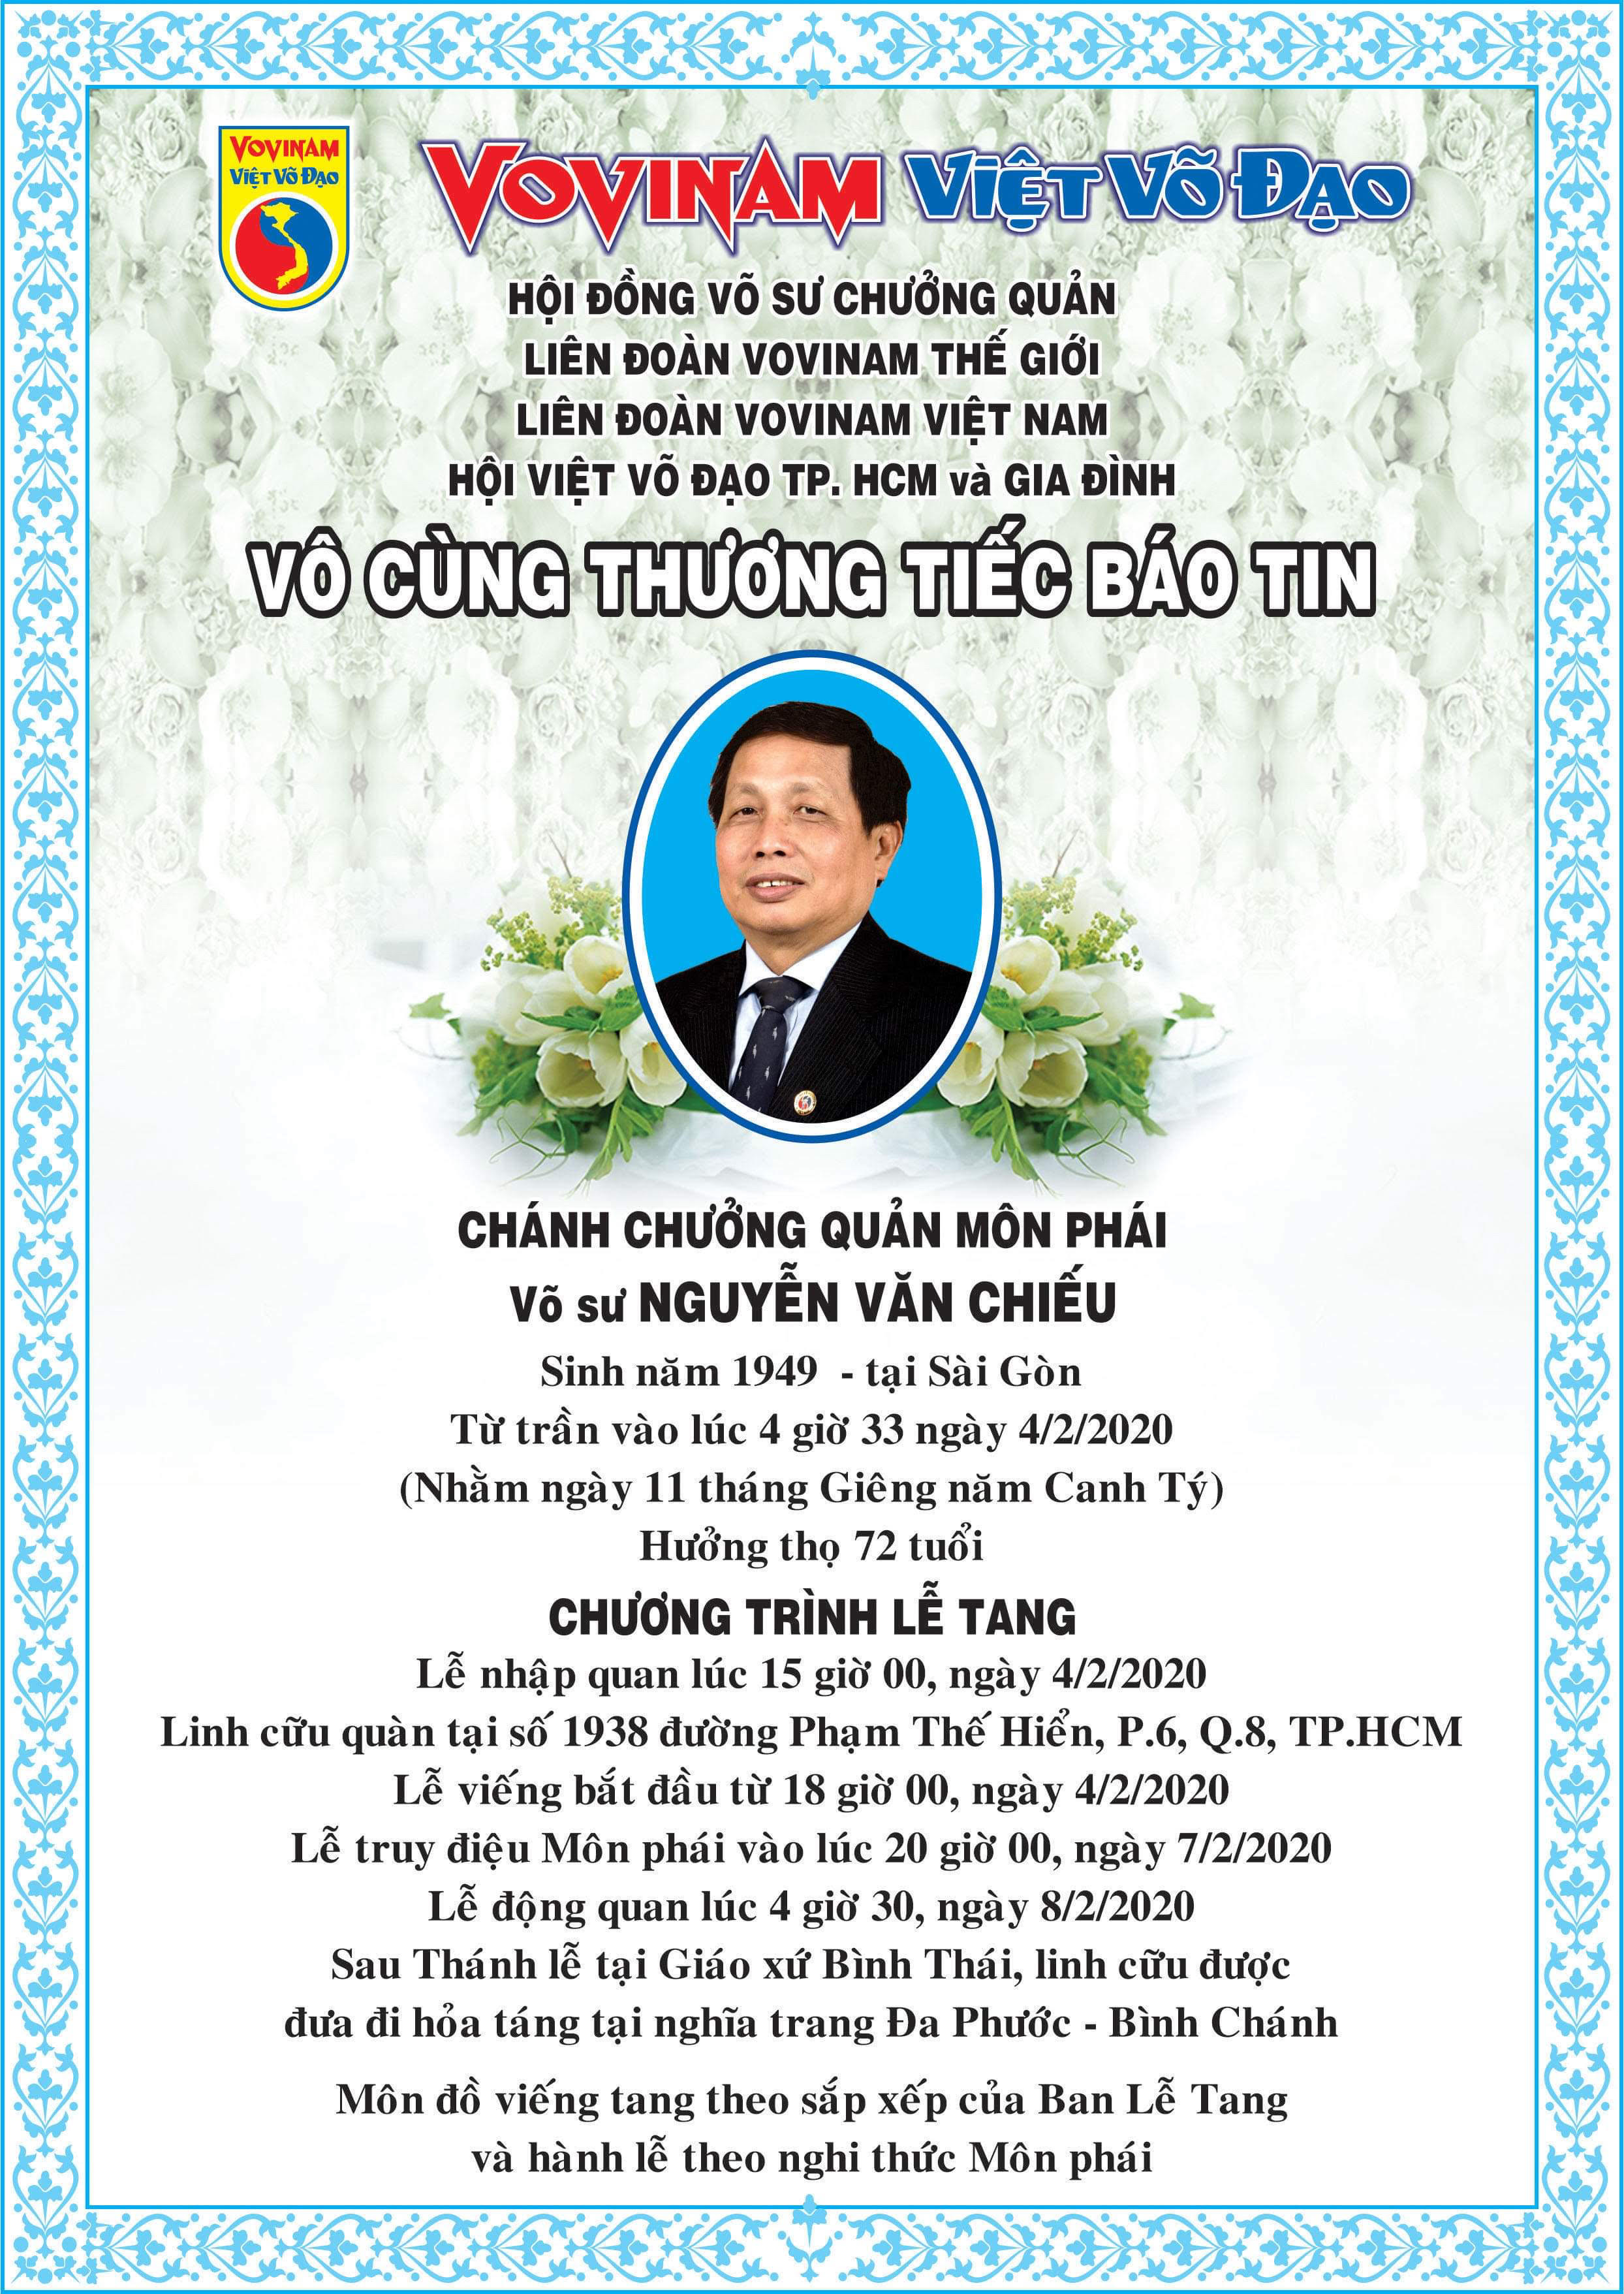 Grand Master Nguyen Van Chieu, Võ sư Chánh Chưởng Quản has passed away